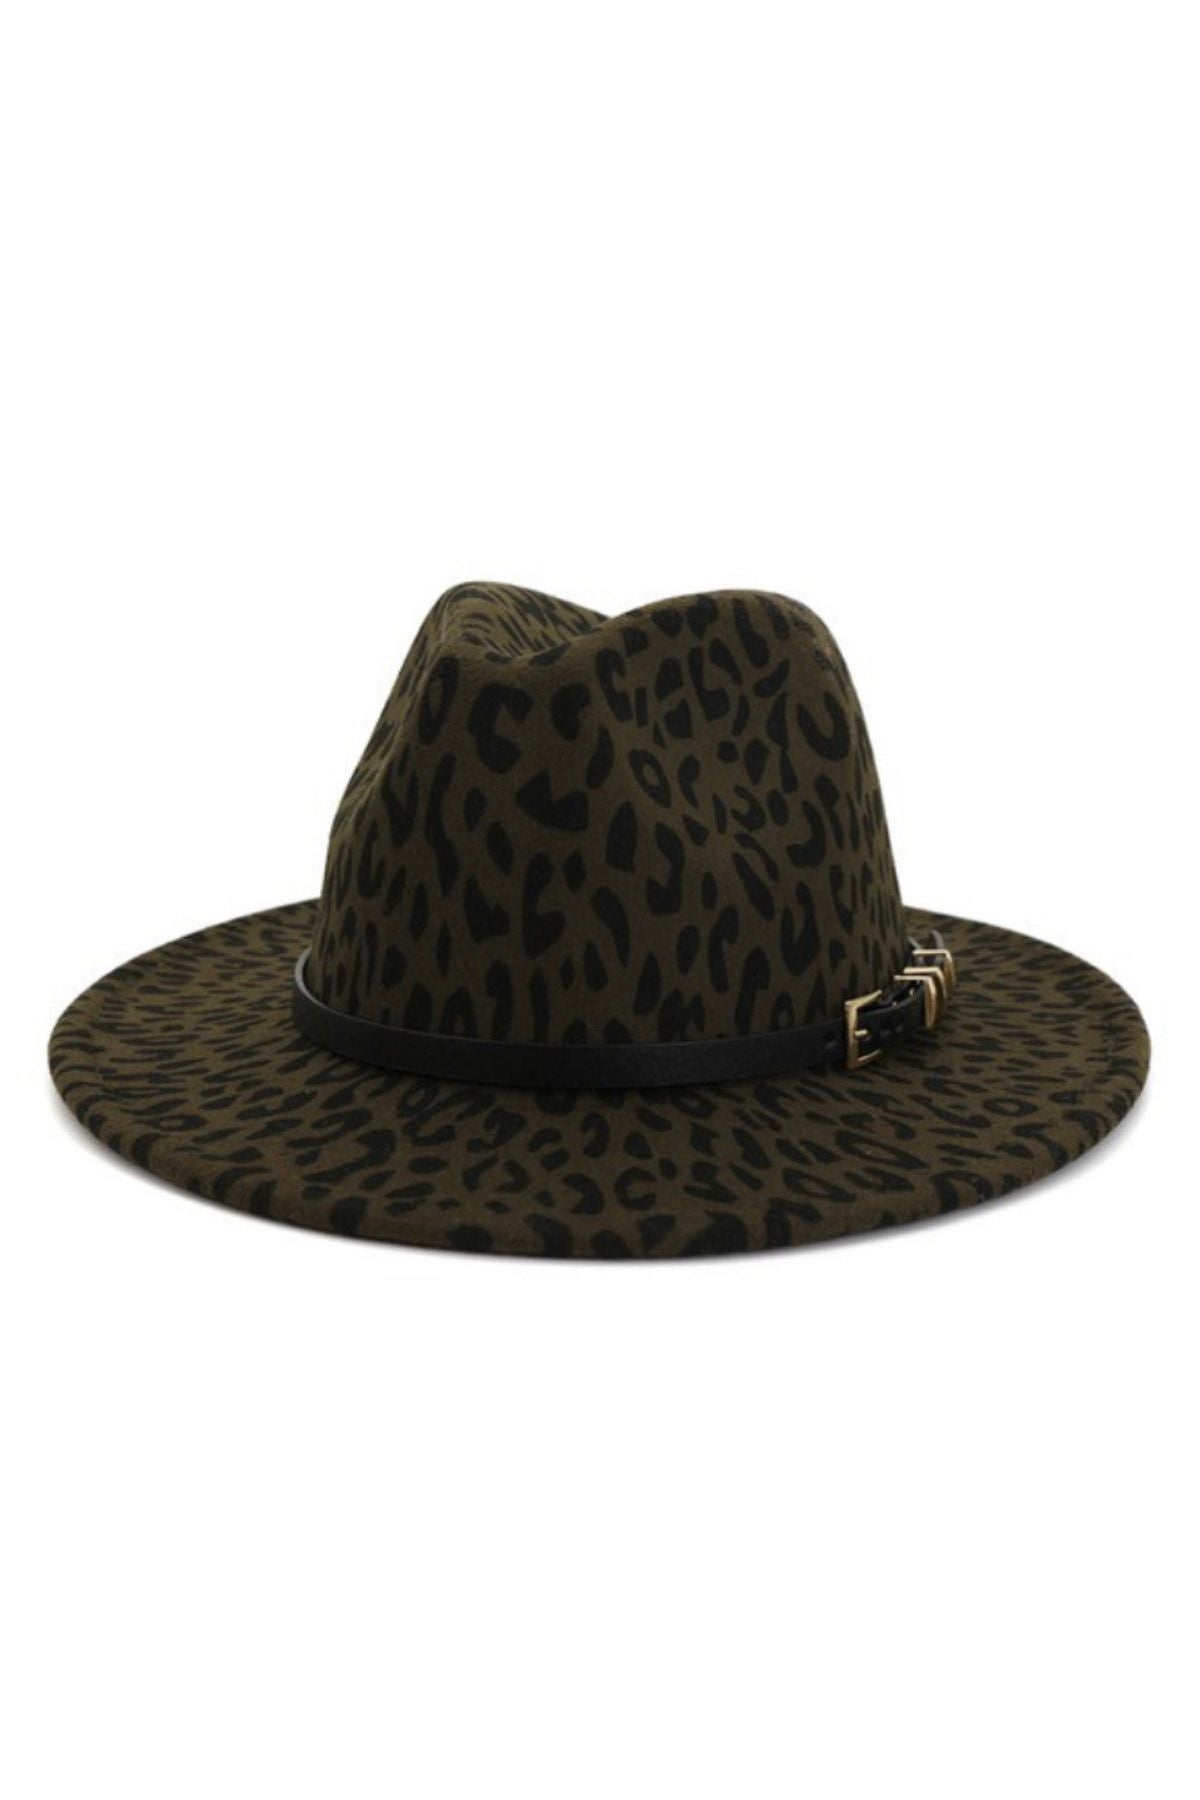 leopard-pattern-hats-army-green